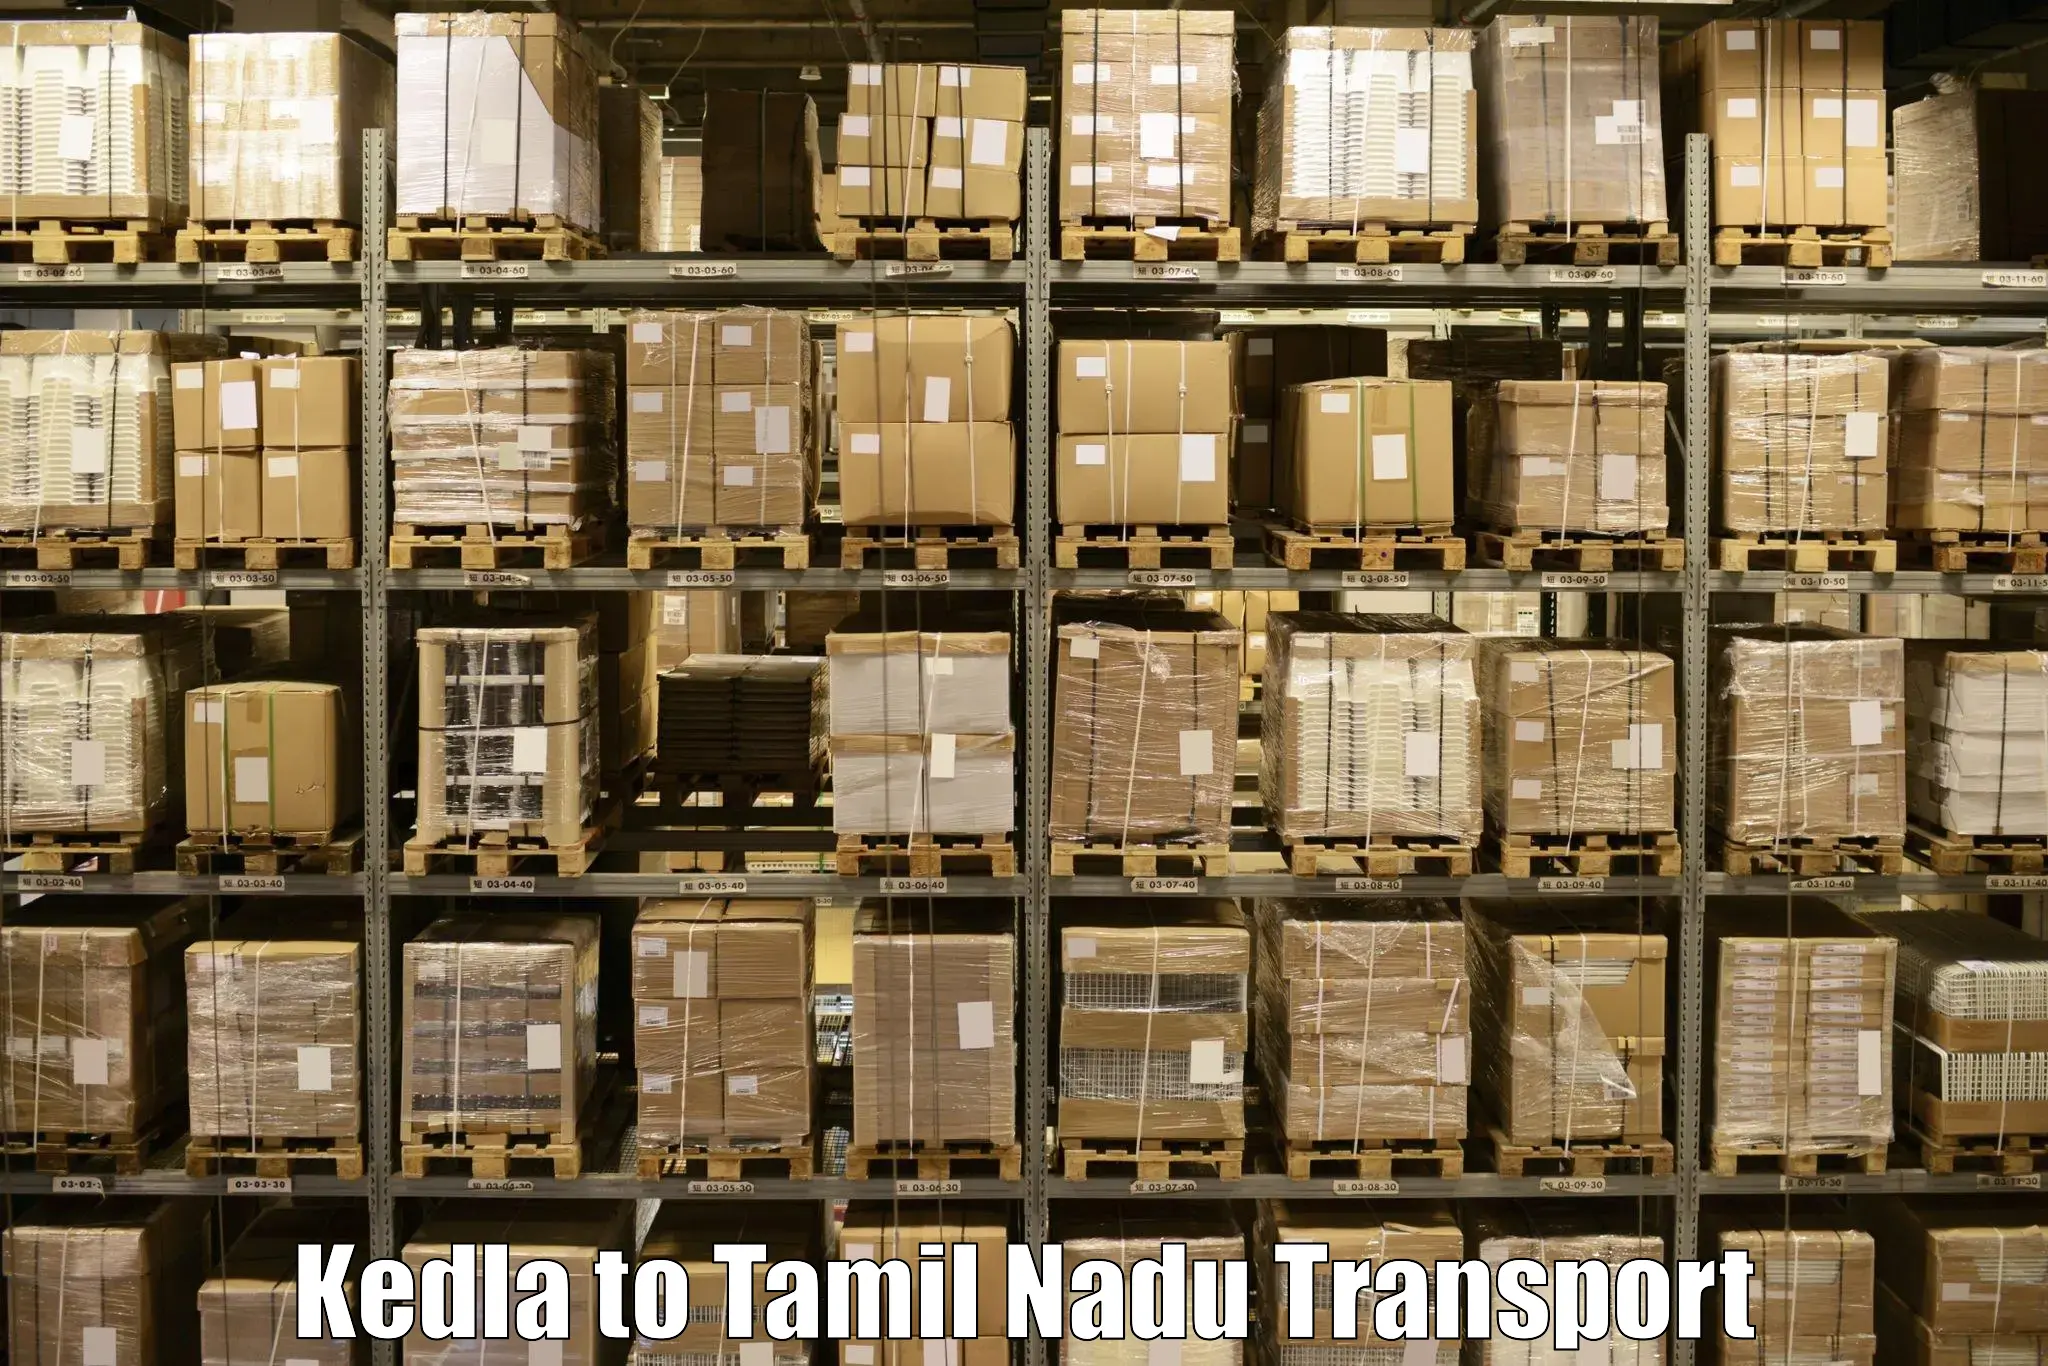 Cargo train transport services Kedla to Sathyamangalam